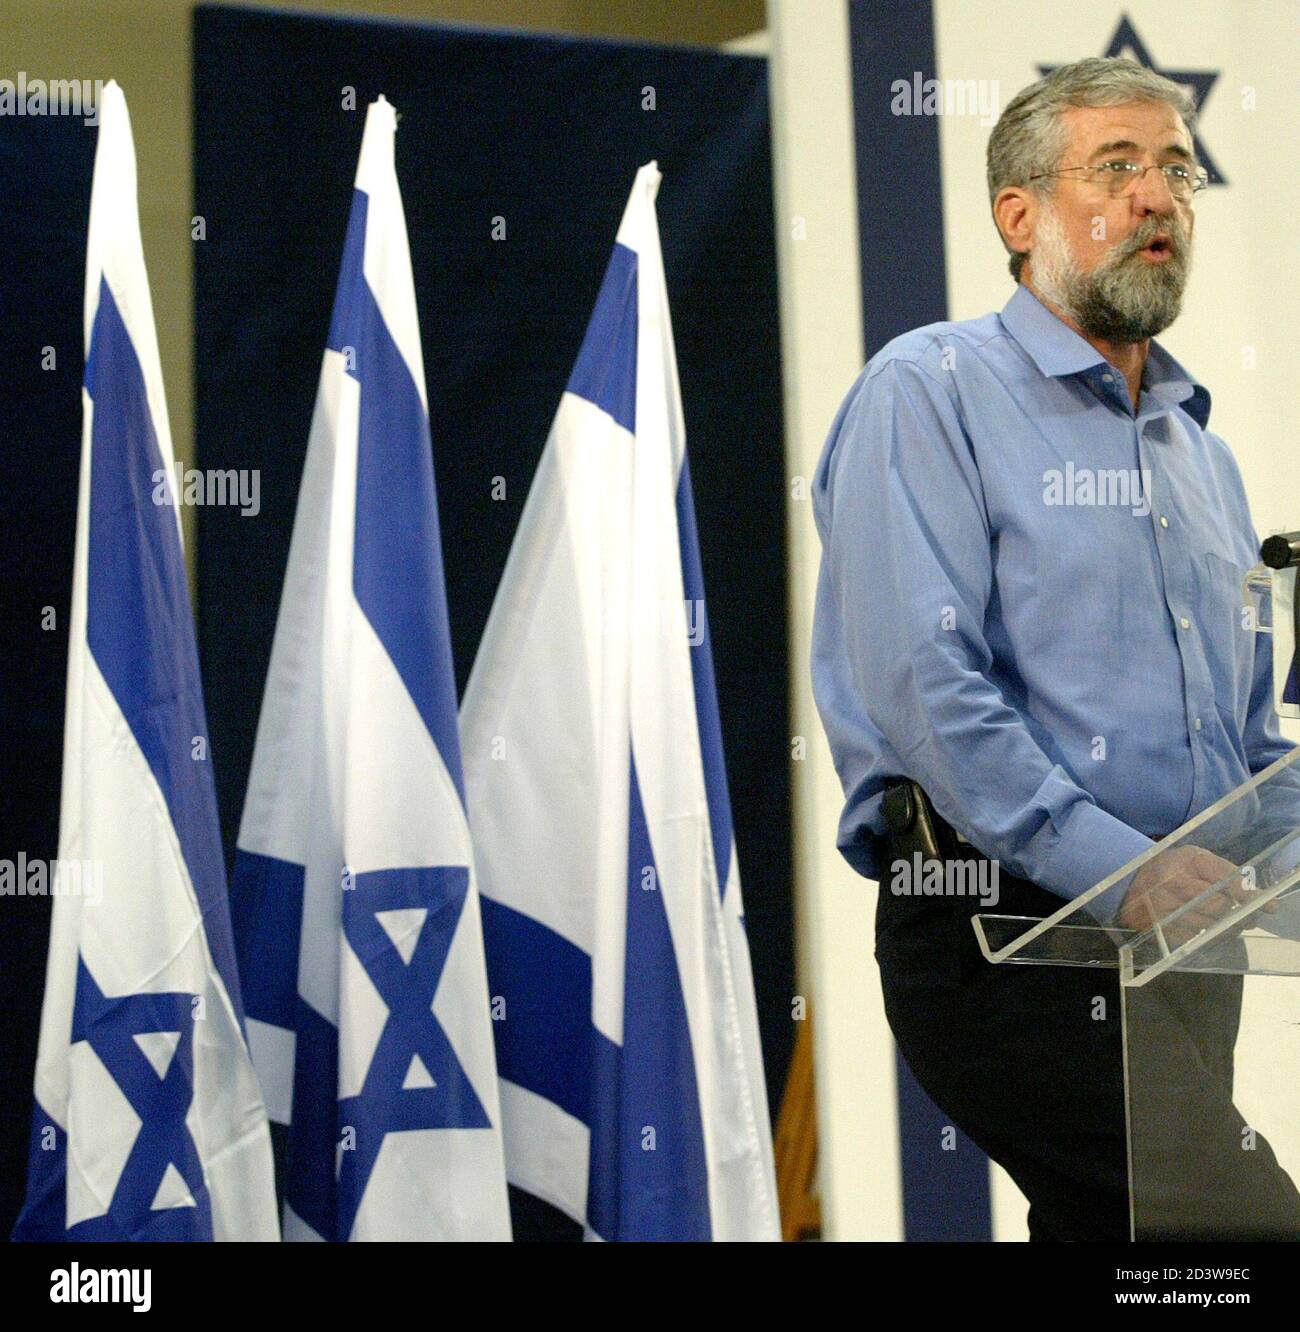 Amram Mitzna parla durante una conferenza stampa a Tel Aviv il 4 maggio 2003. Mitzna, il dovido ex generale schiacciato dal primo ministro Ariel Sharon alle elezioni israeliane di gennaio, ha annunciato domenica le sue dimissioni da capo del principale partito laburista dell'opposizione. REUTERS/NIR Elias NIR/JV Foto Stock